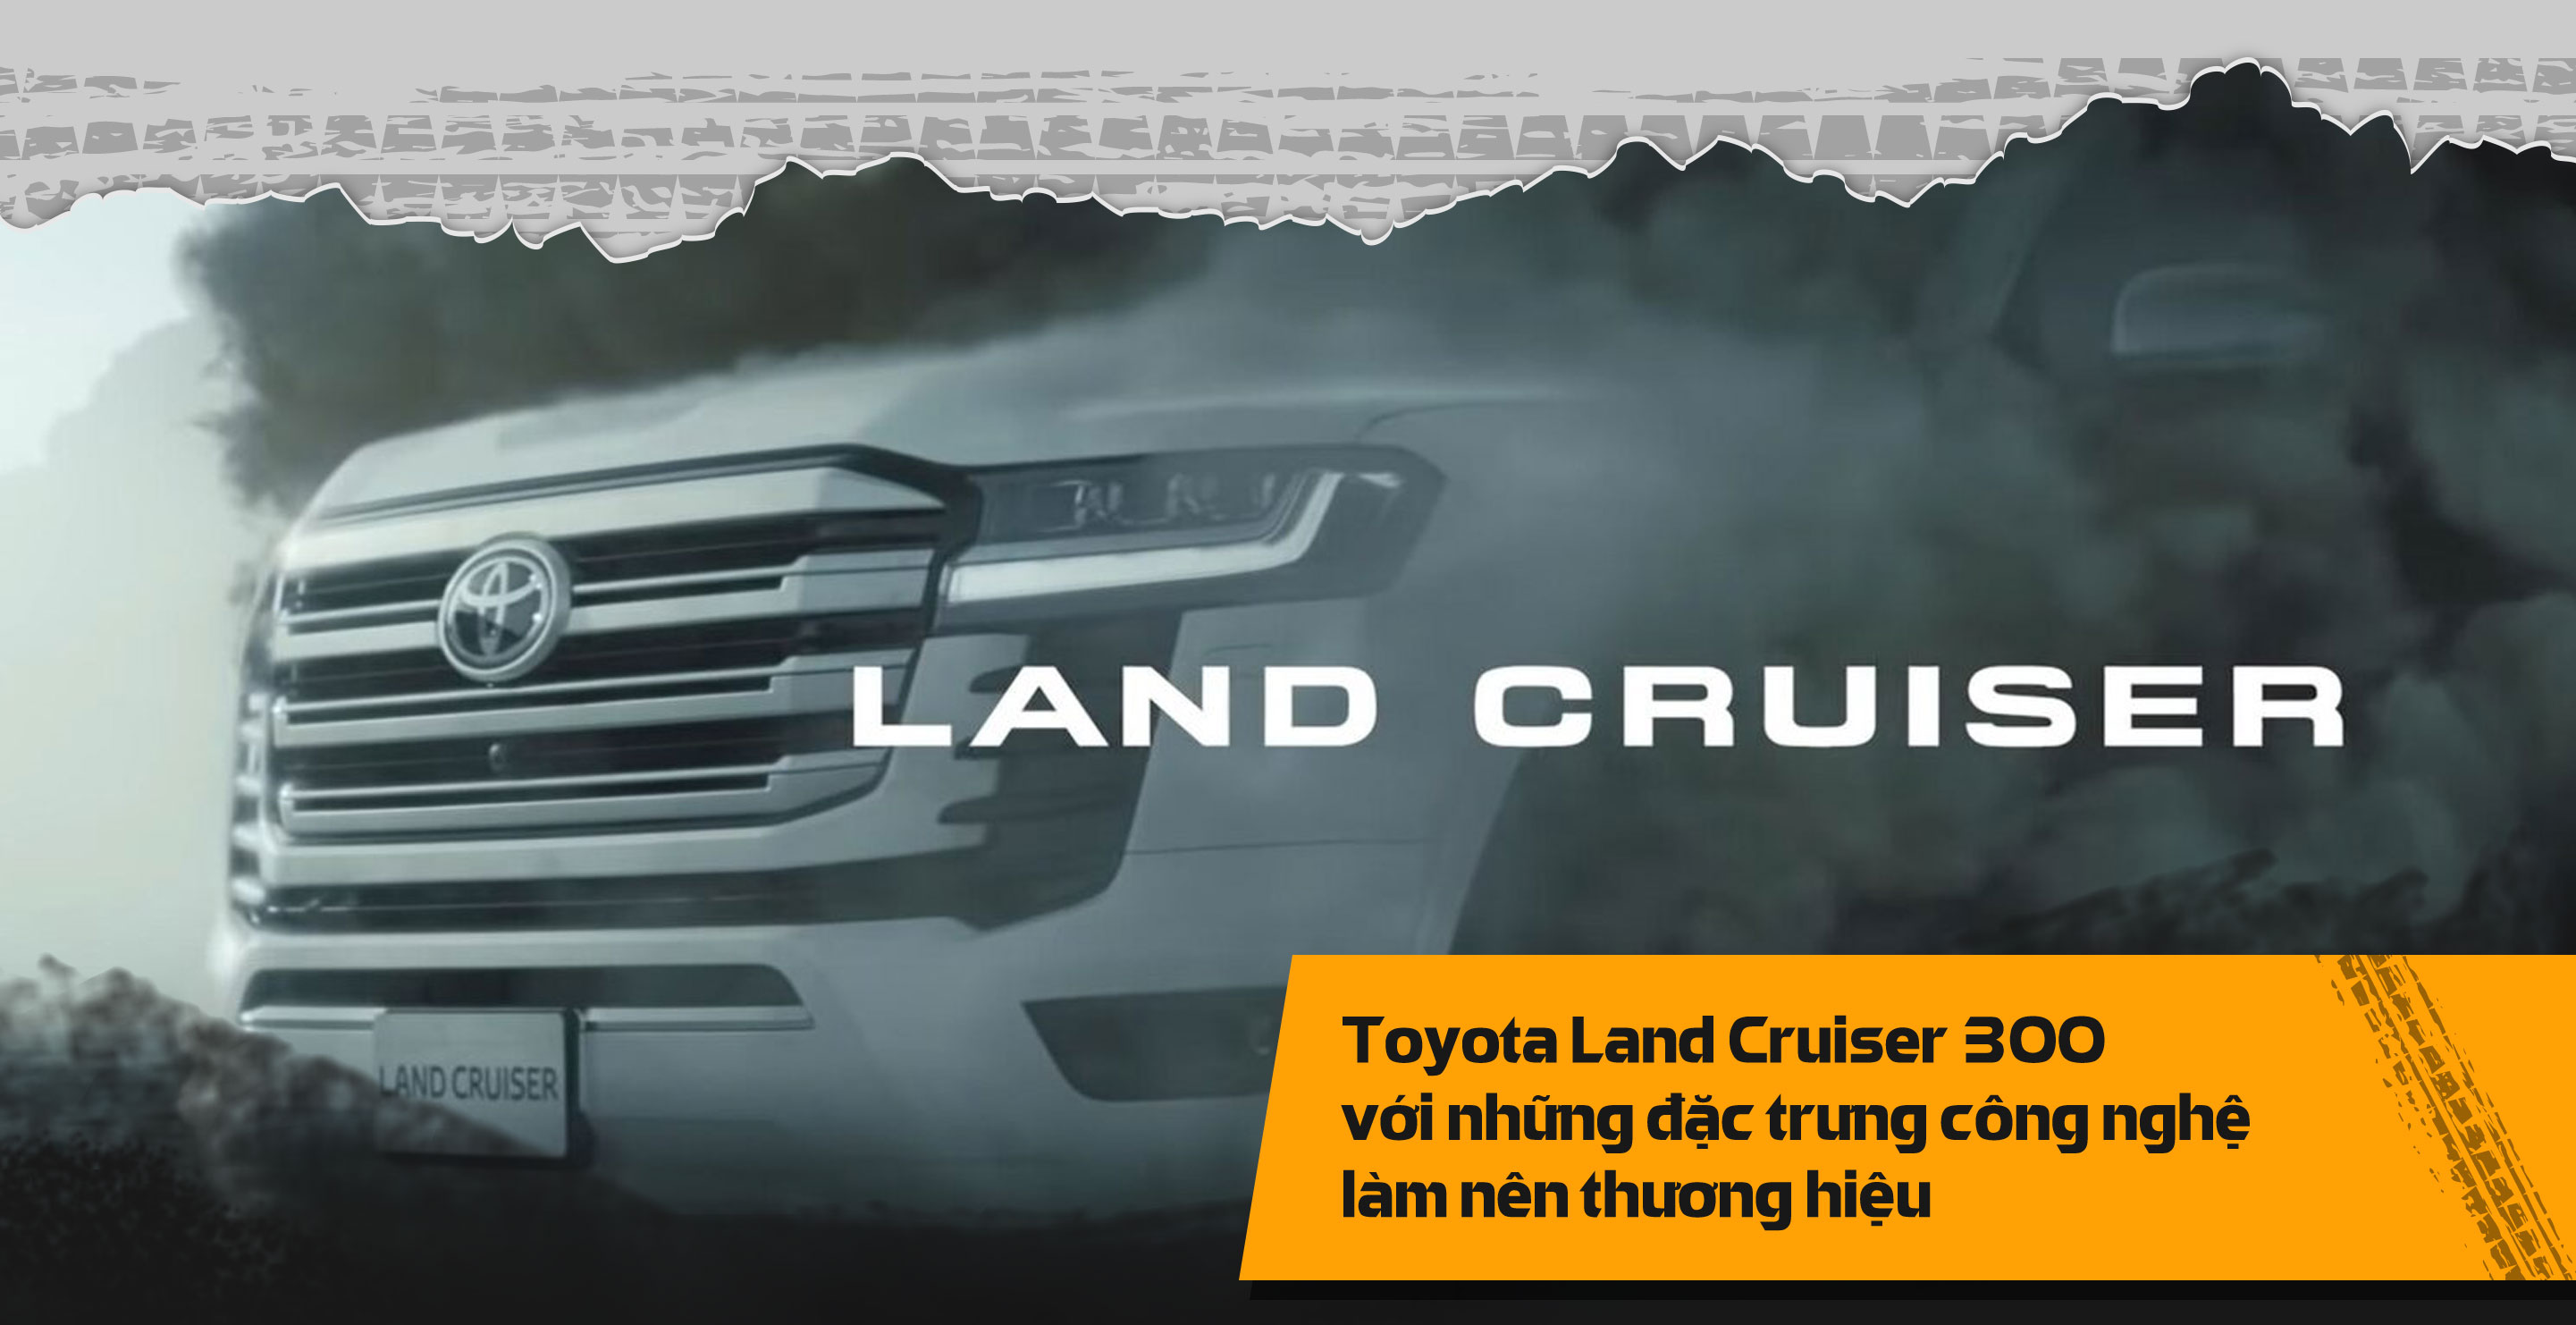 Toyota Land Cruiser 300 với những đặc trưng công nghệ làm nên thương hiệu